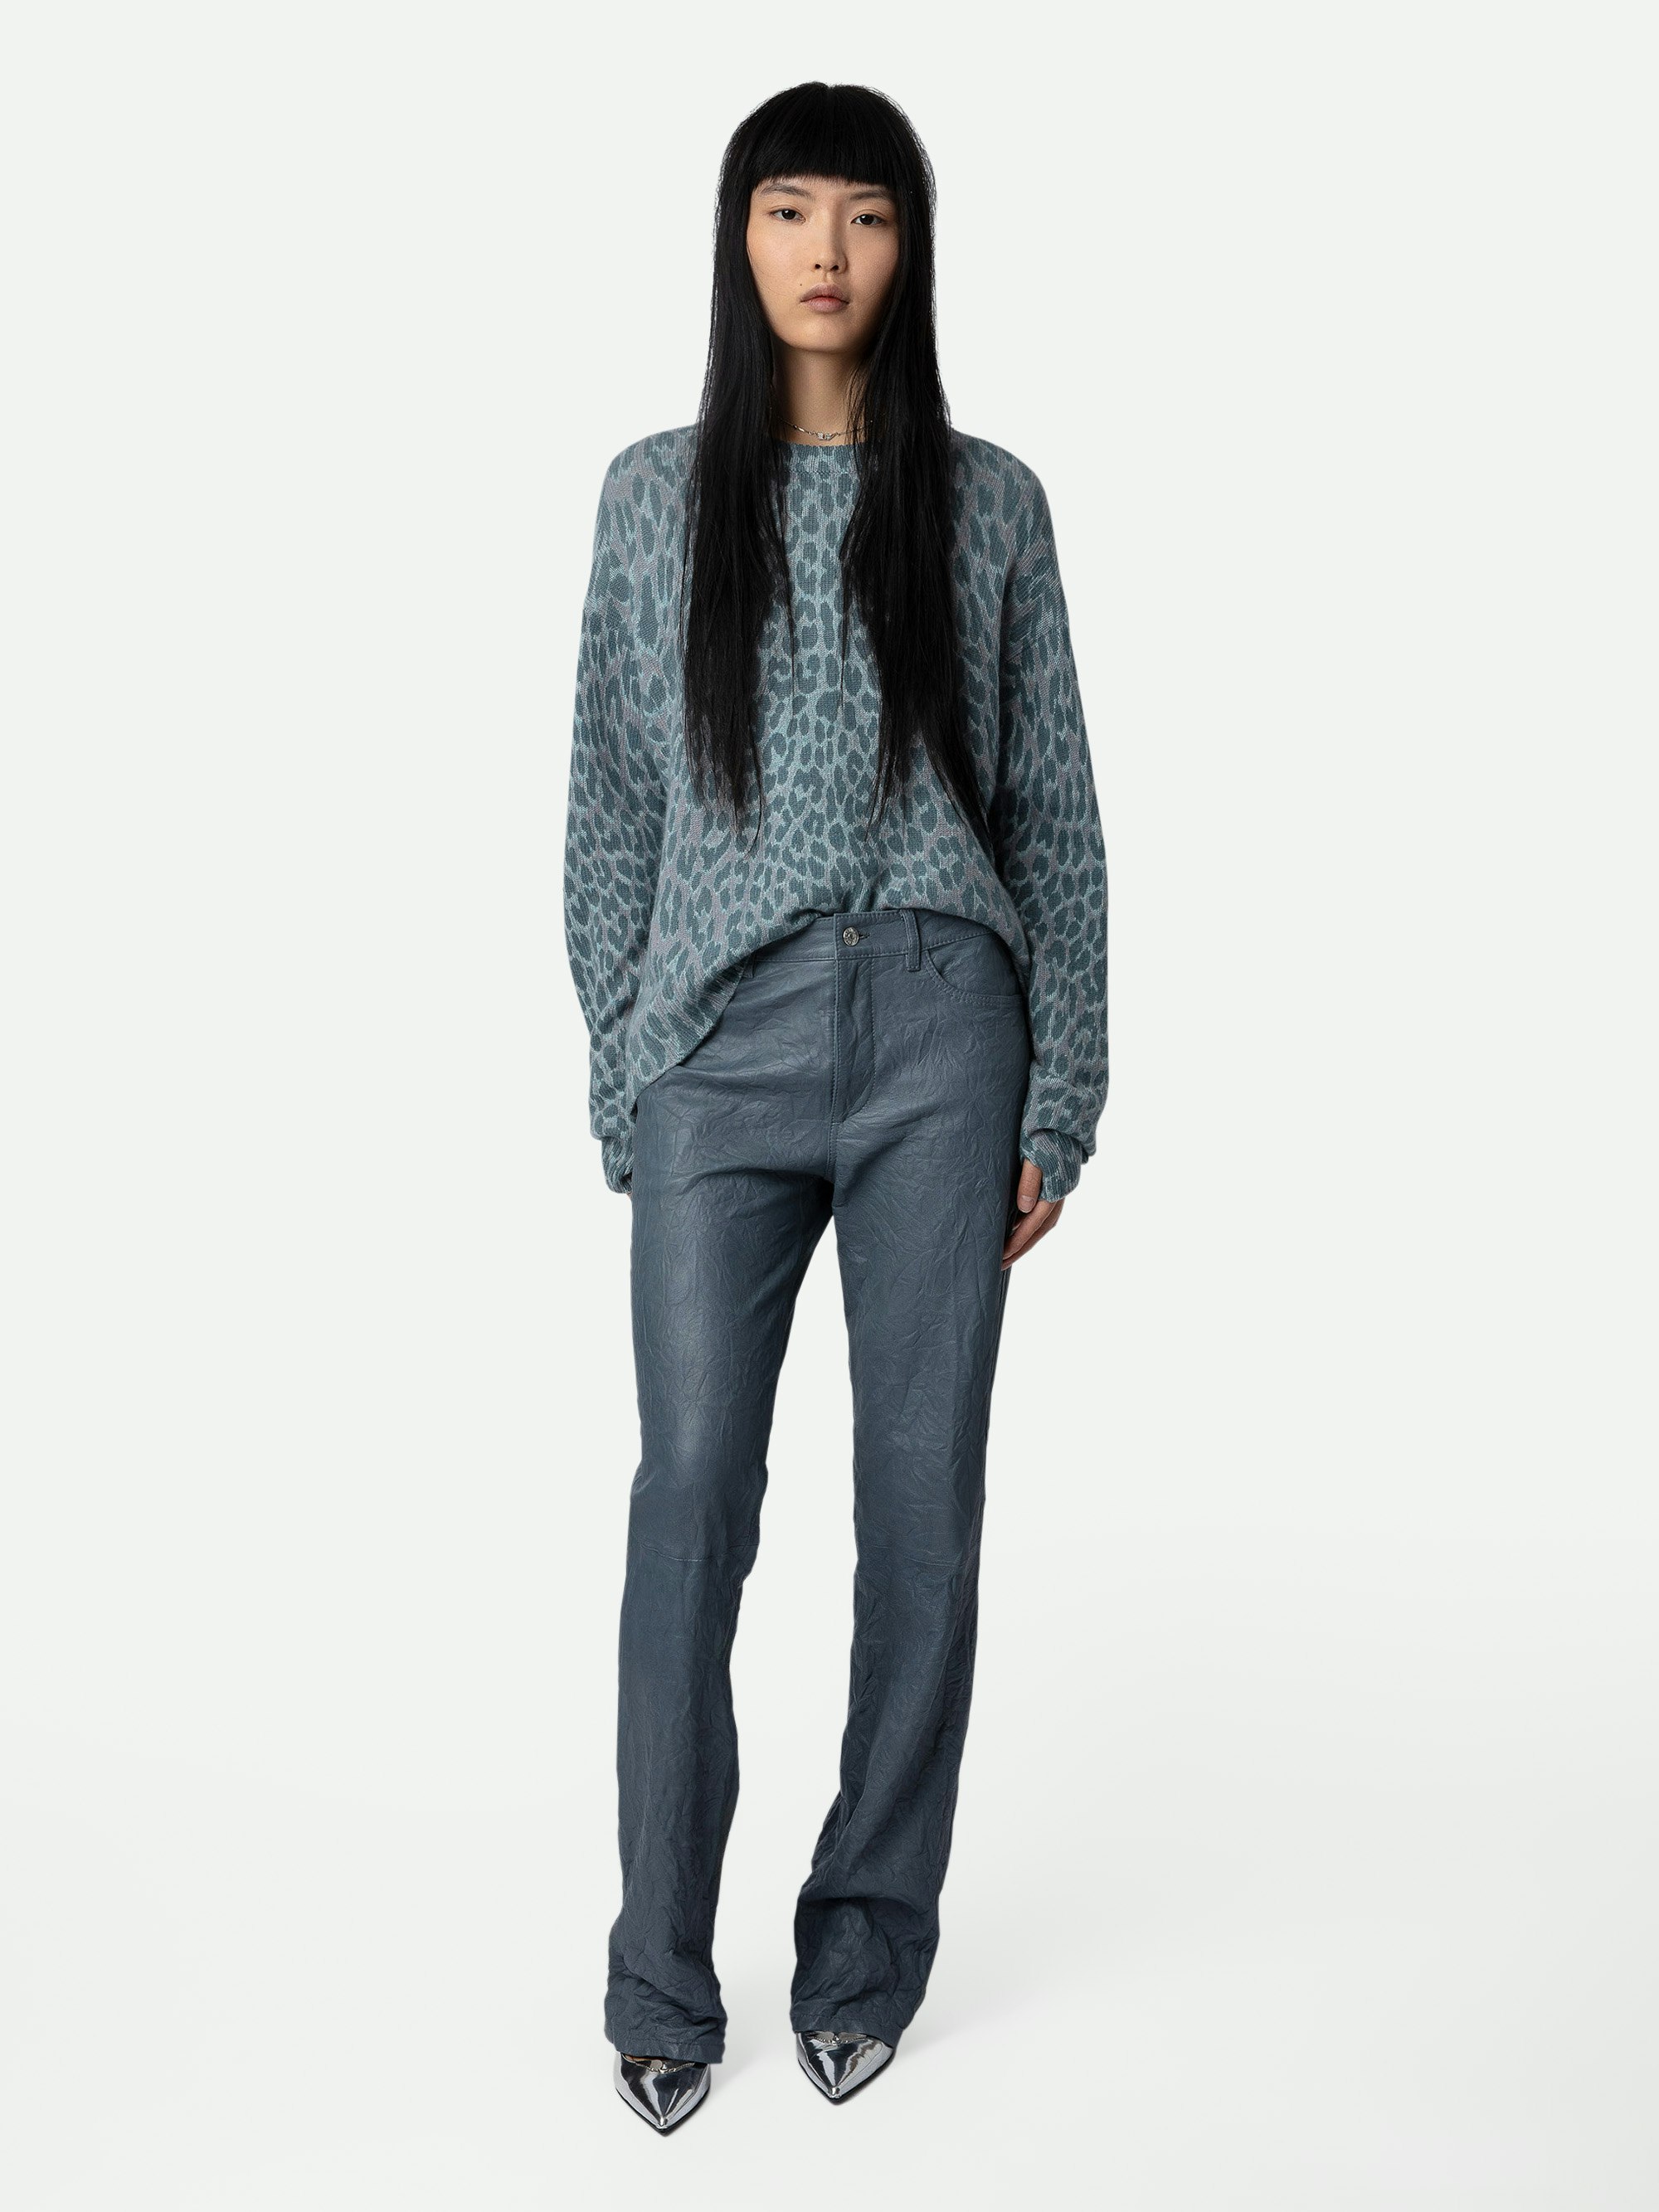 Markus Leopard Jumper 100% Cashmere  - Blue 100% cashmere long-sleeved jumper with leopard print.